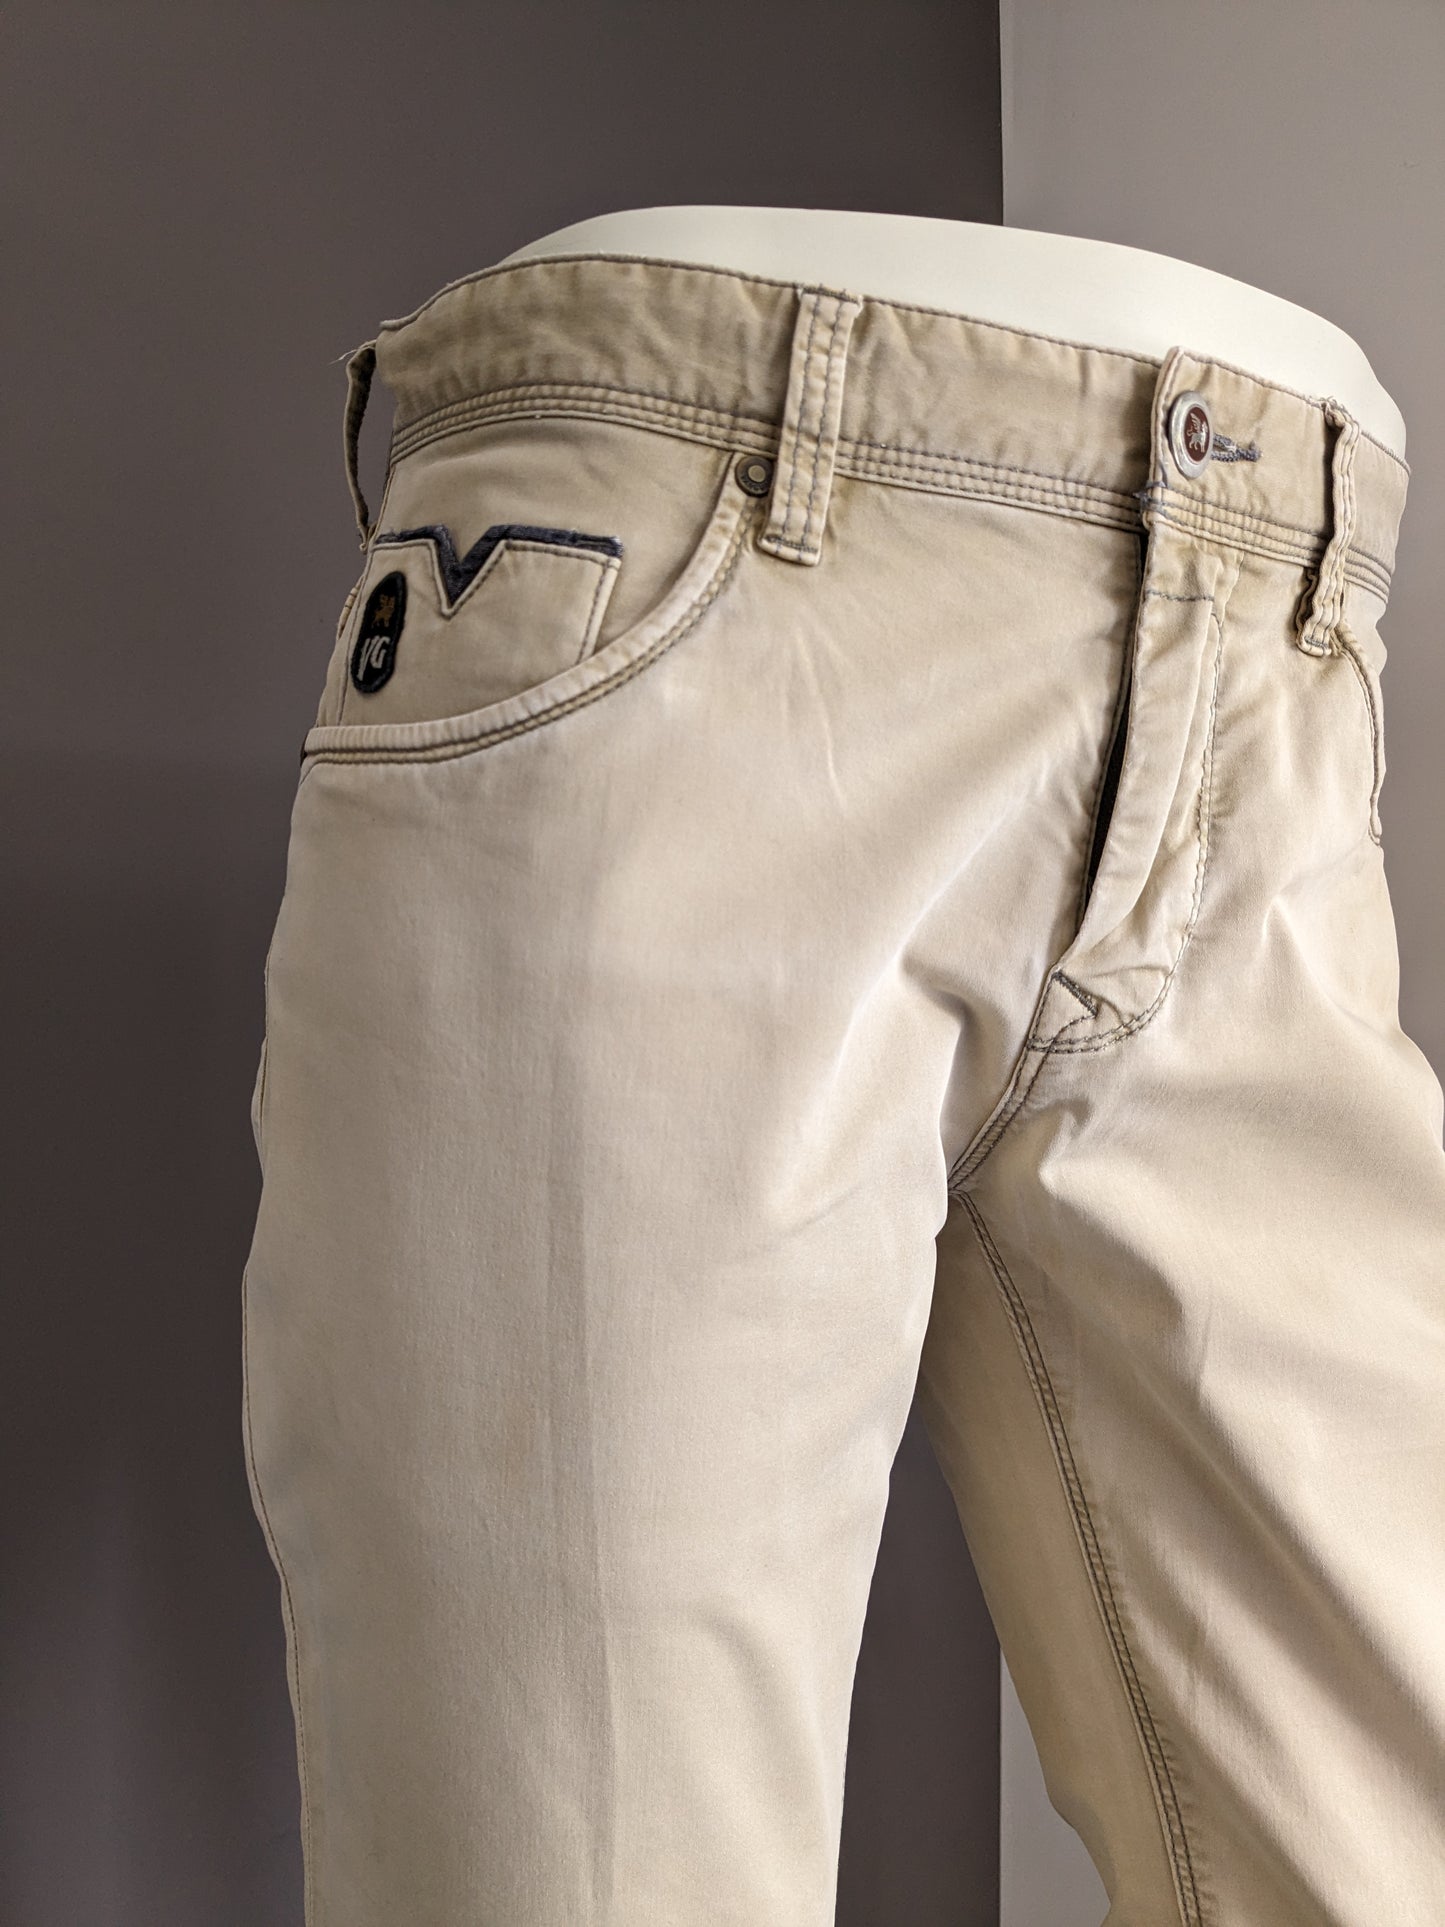 Pantalon Vanguard. Coloré beige. Taille W31 - L32.